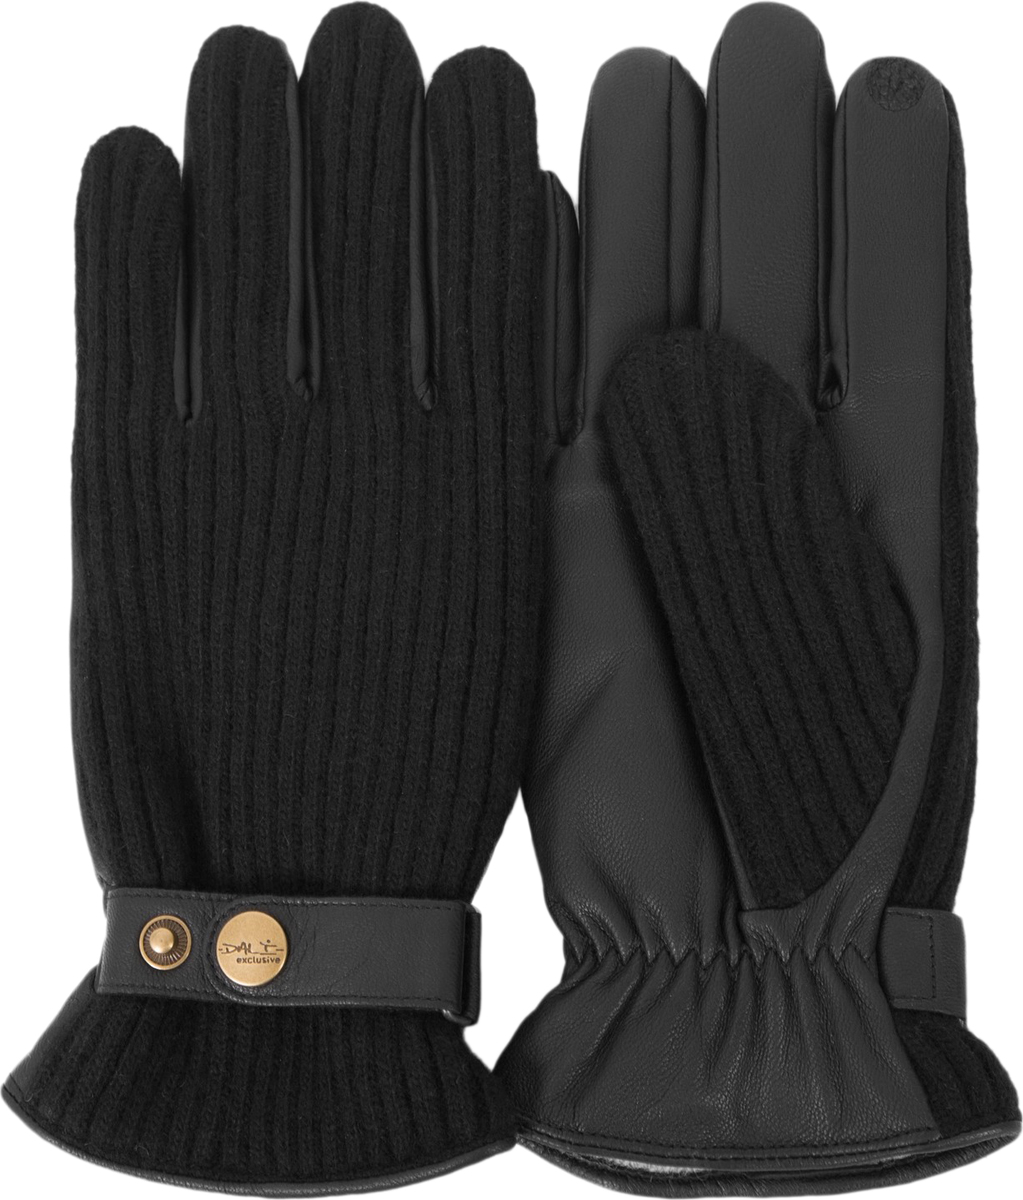 Перчатки мужские Dali Exclusive, цвет: черный. i.GT11_BOND/BL. Размер 8